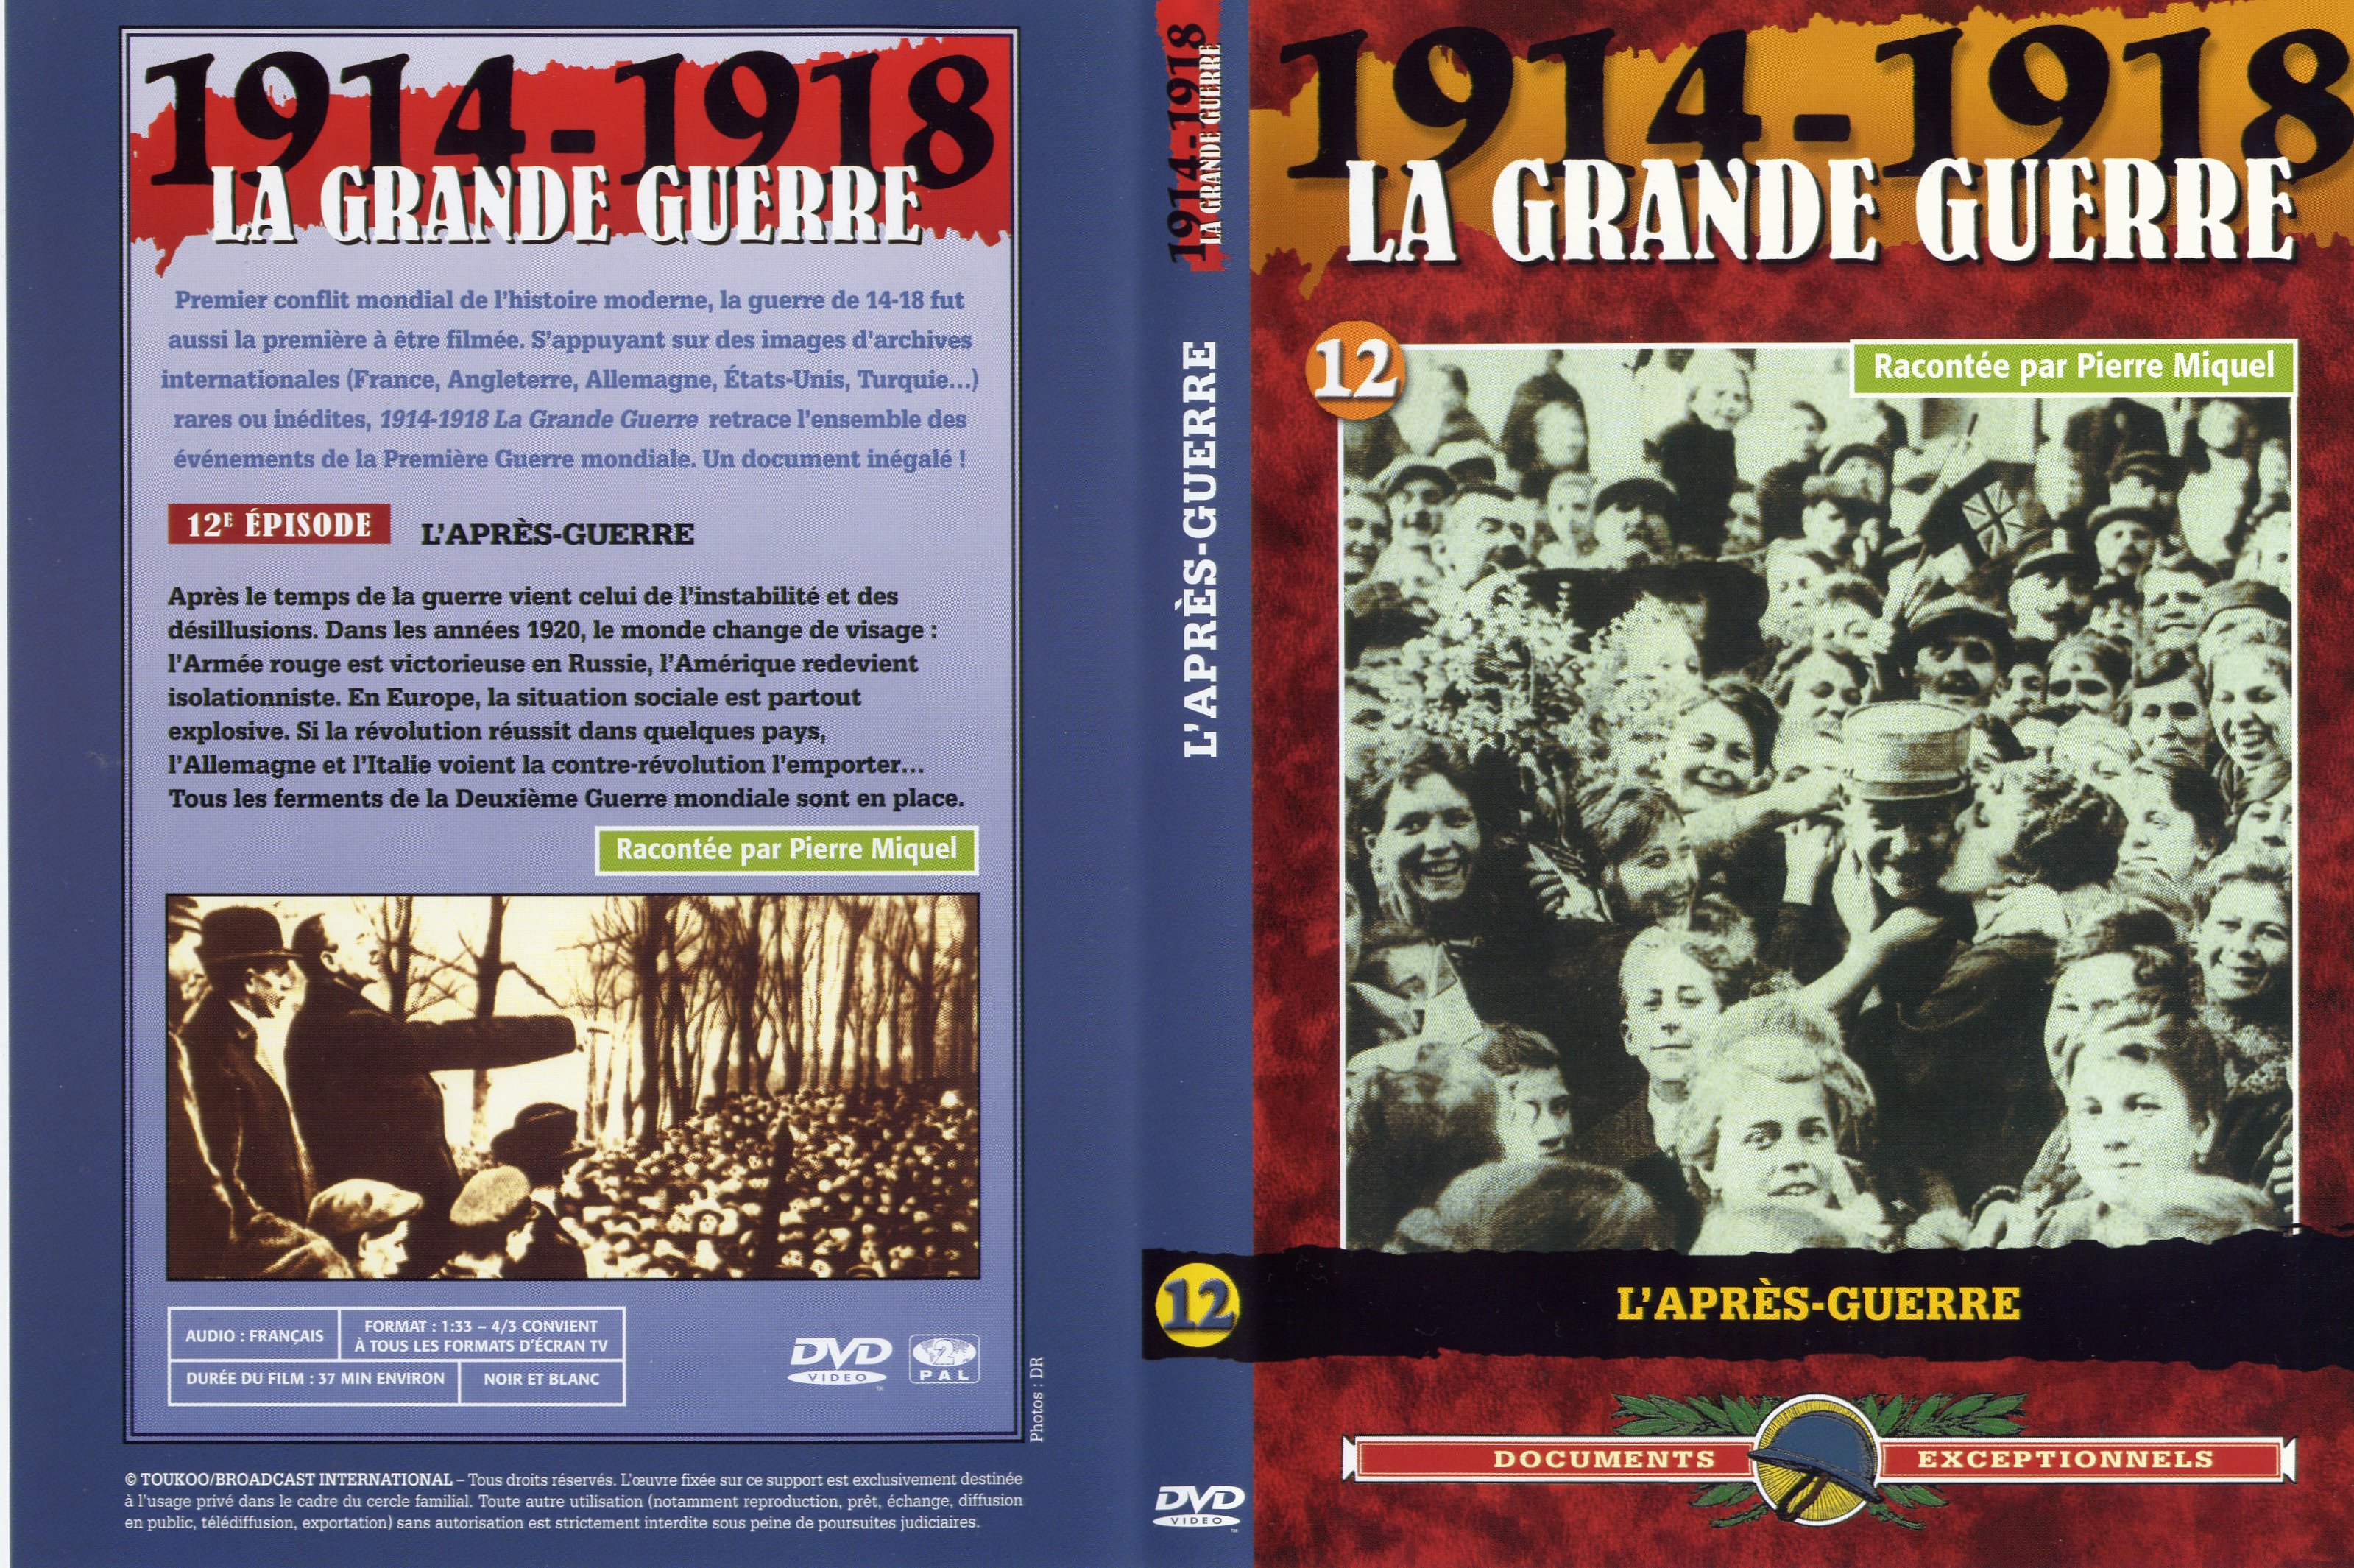 Jaquette DVD La grande guerre 1914 1918 vol 12